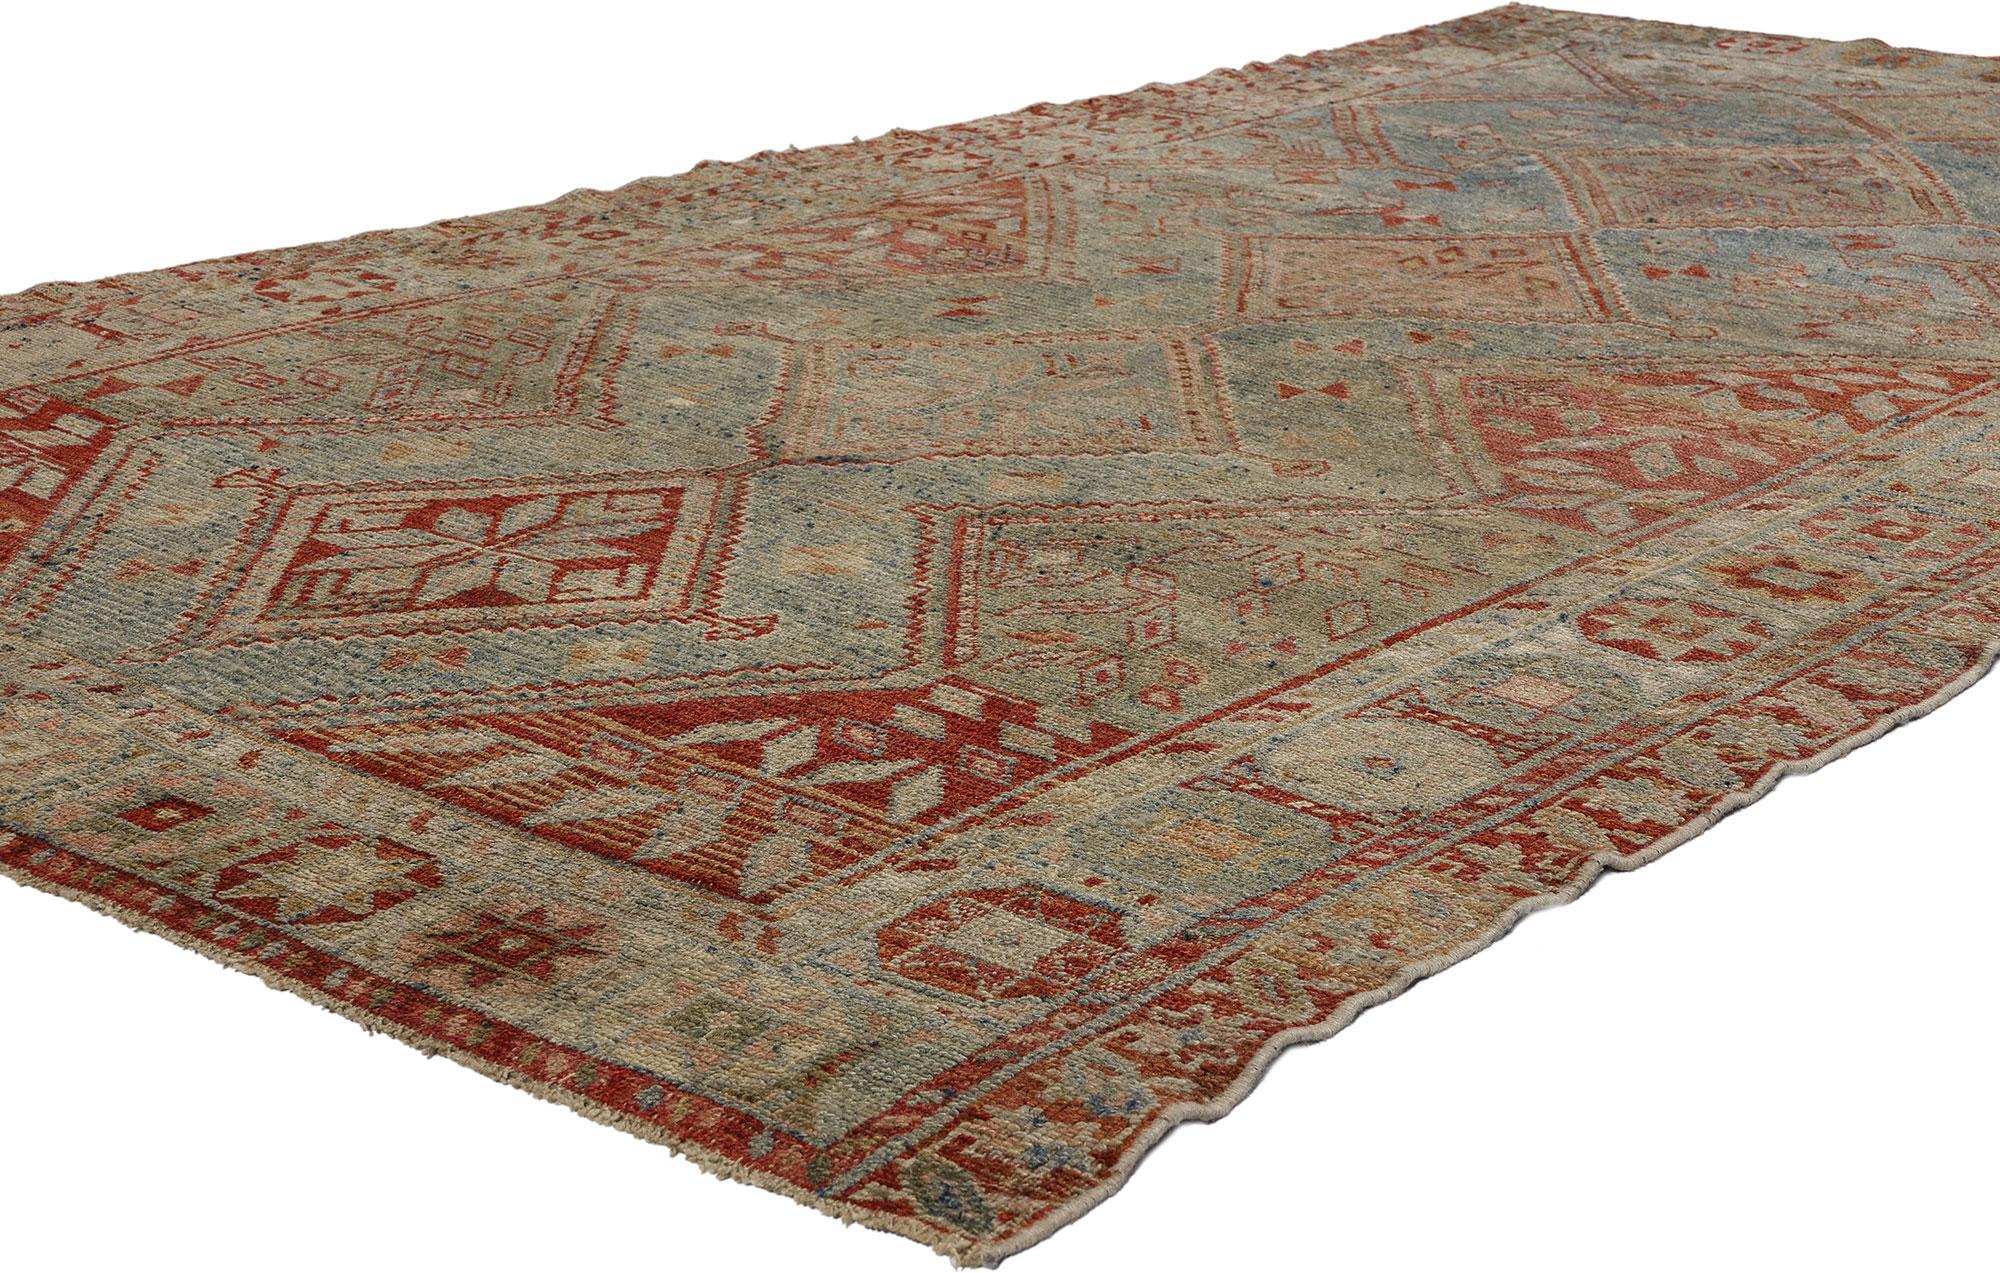 52455 Antiker persischer Shiraz-Teppich, 04'06 x 08'05. Im fesselnden Reich des nomadischen Charmes liegt dieser antike persische Shiraz-Teppich aus handgeknüpfter Wolle, ein gewebtes Meisterwerk, das Geschichten aus einer vergangenen Epoche